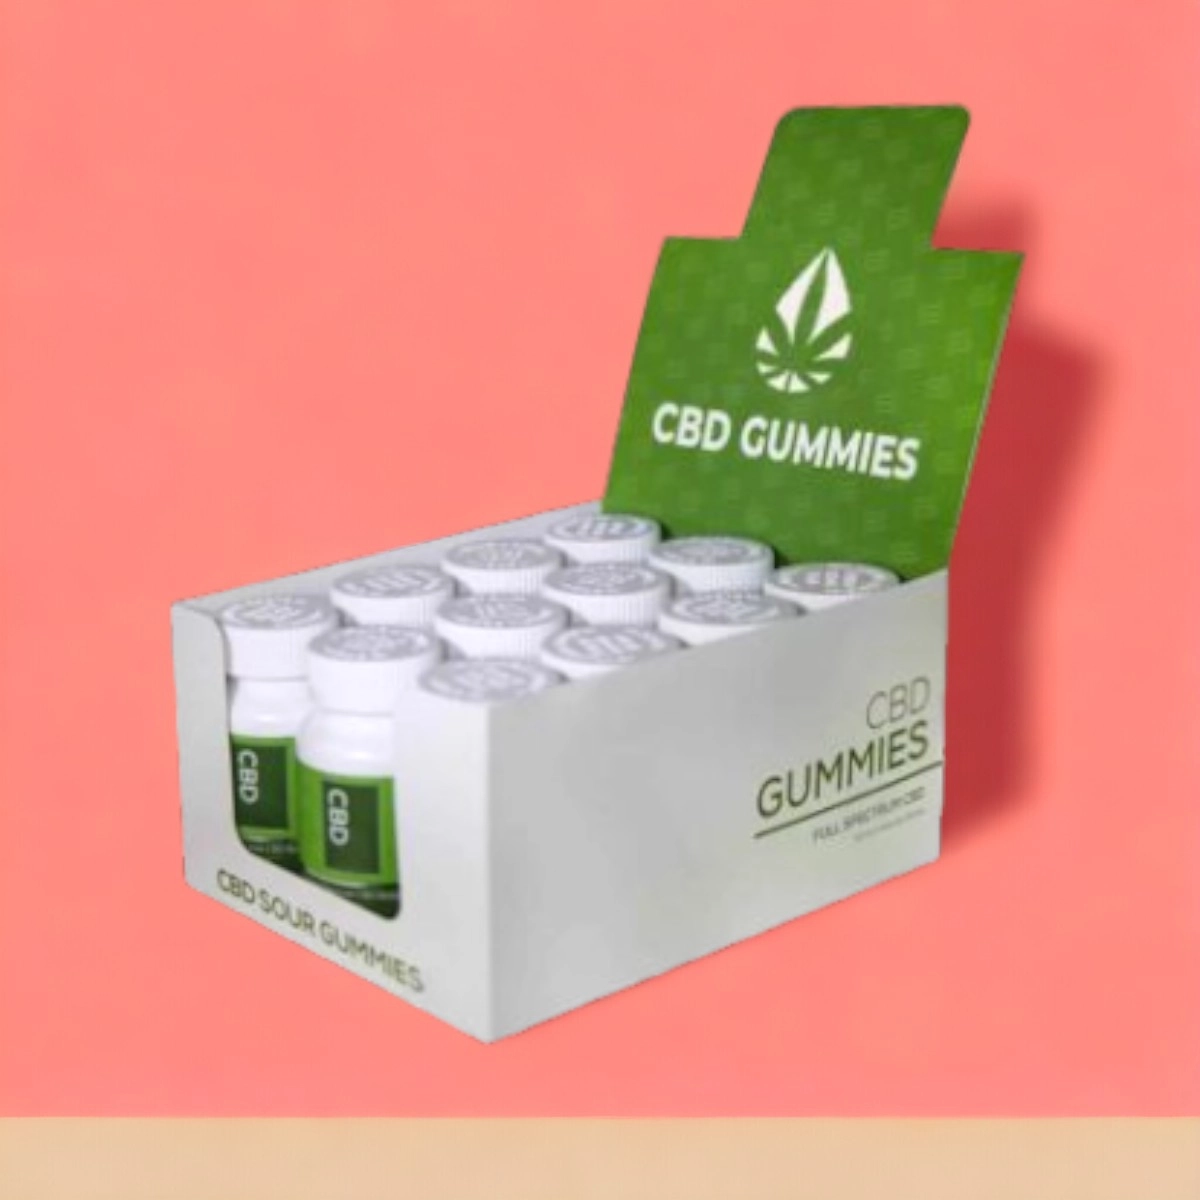 display-cbd-gummies-packaging